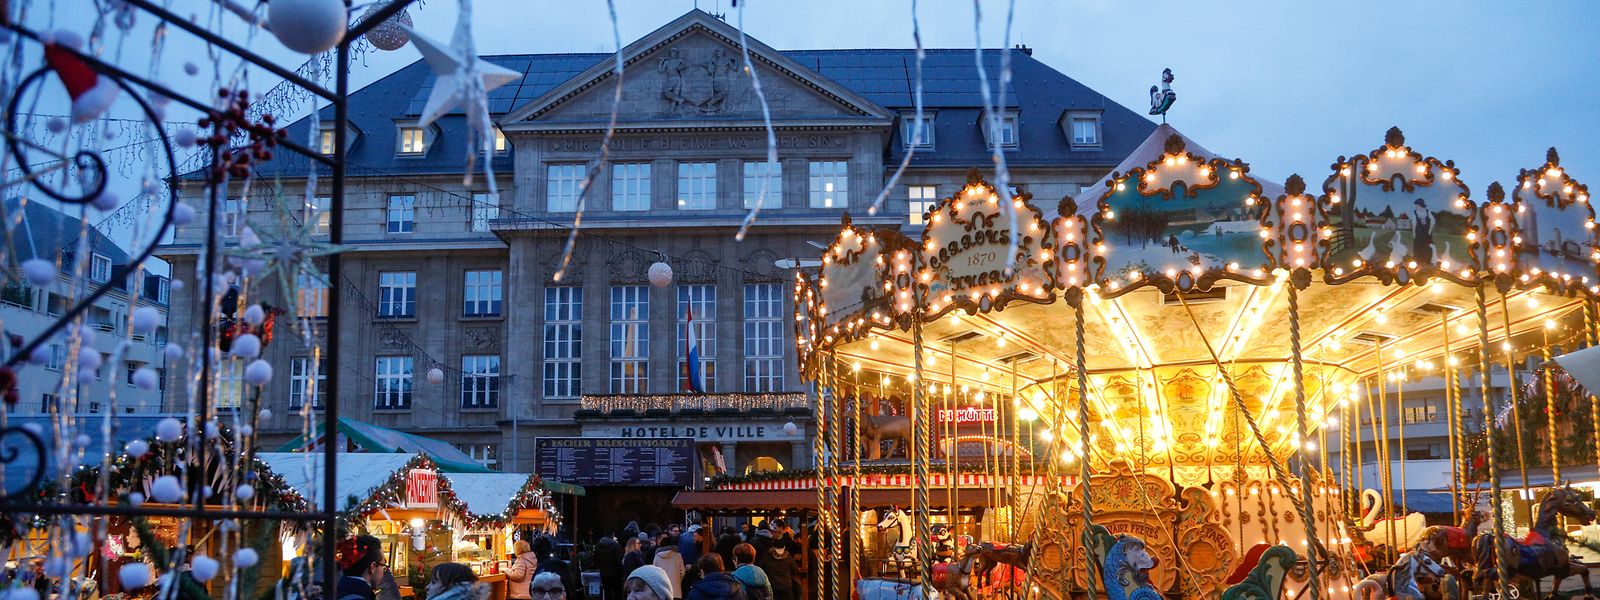 Der Weihnachtsmarkt in Esch soll in diesem Jahr wieder zahlreiche Besucher anlocken.